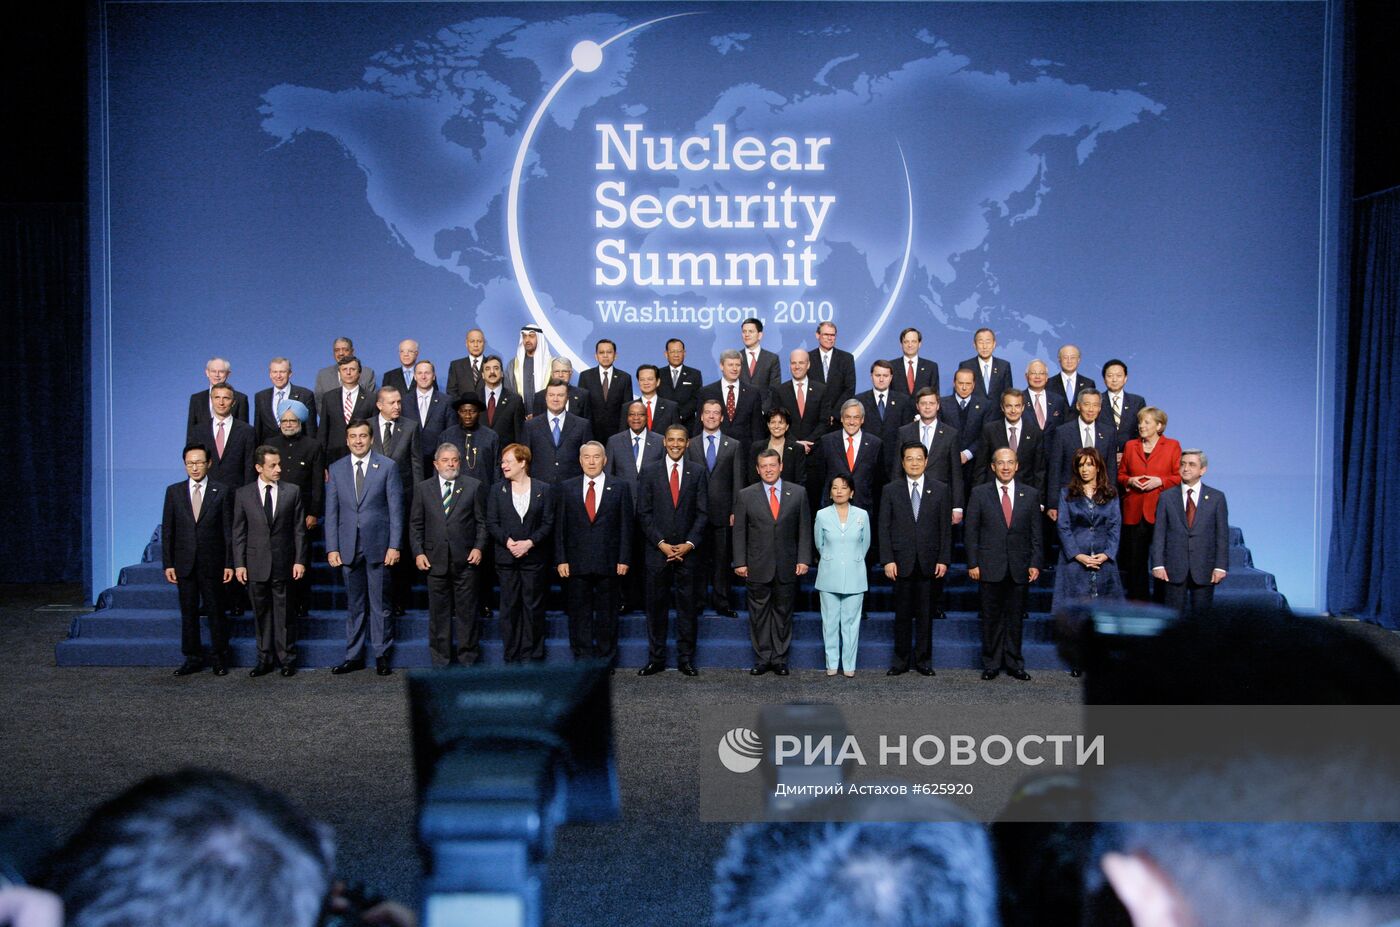 Саммит в Вашингтоне по вопросам ядерной безопасности. 2-й день